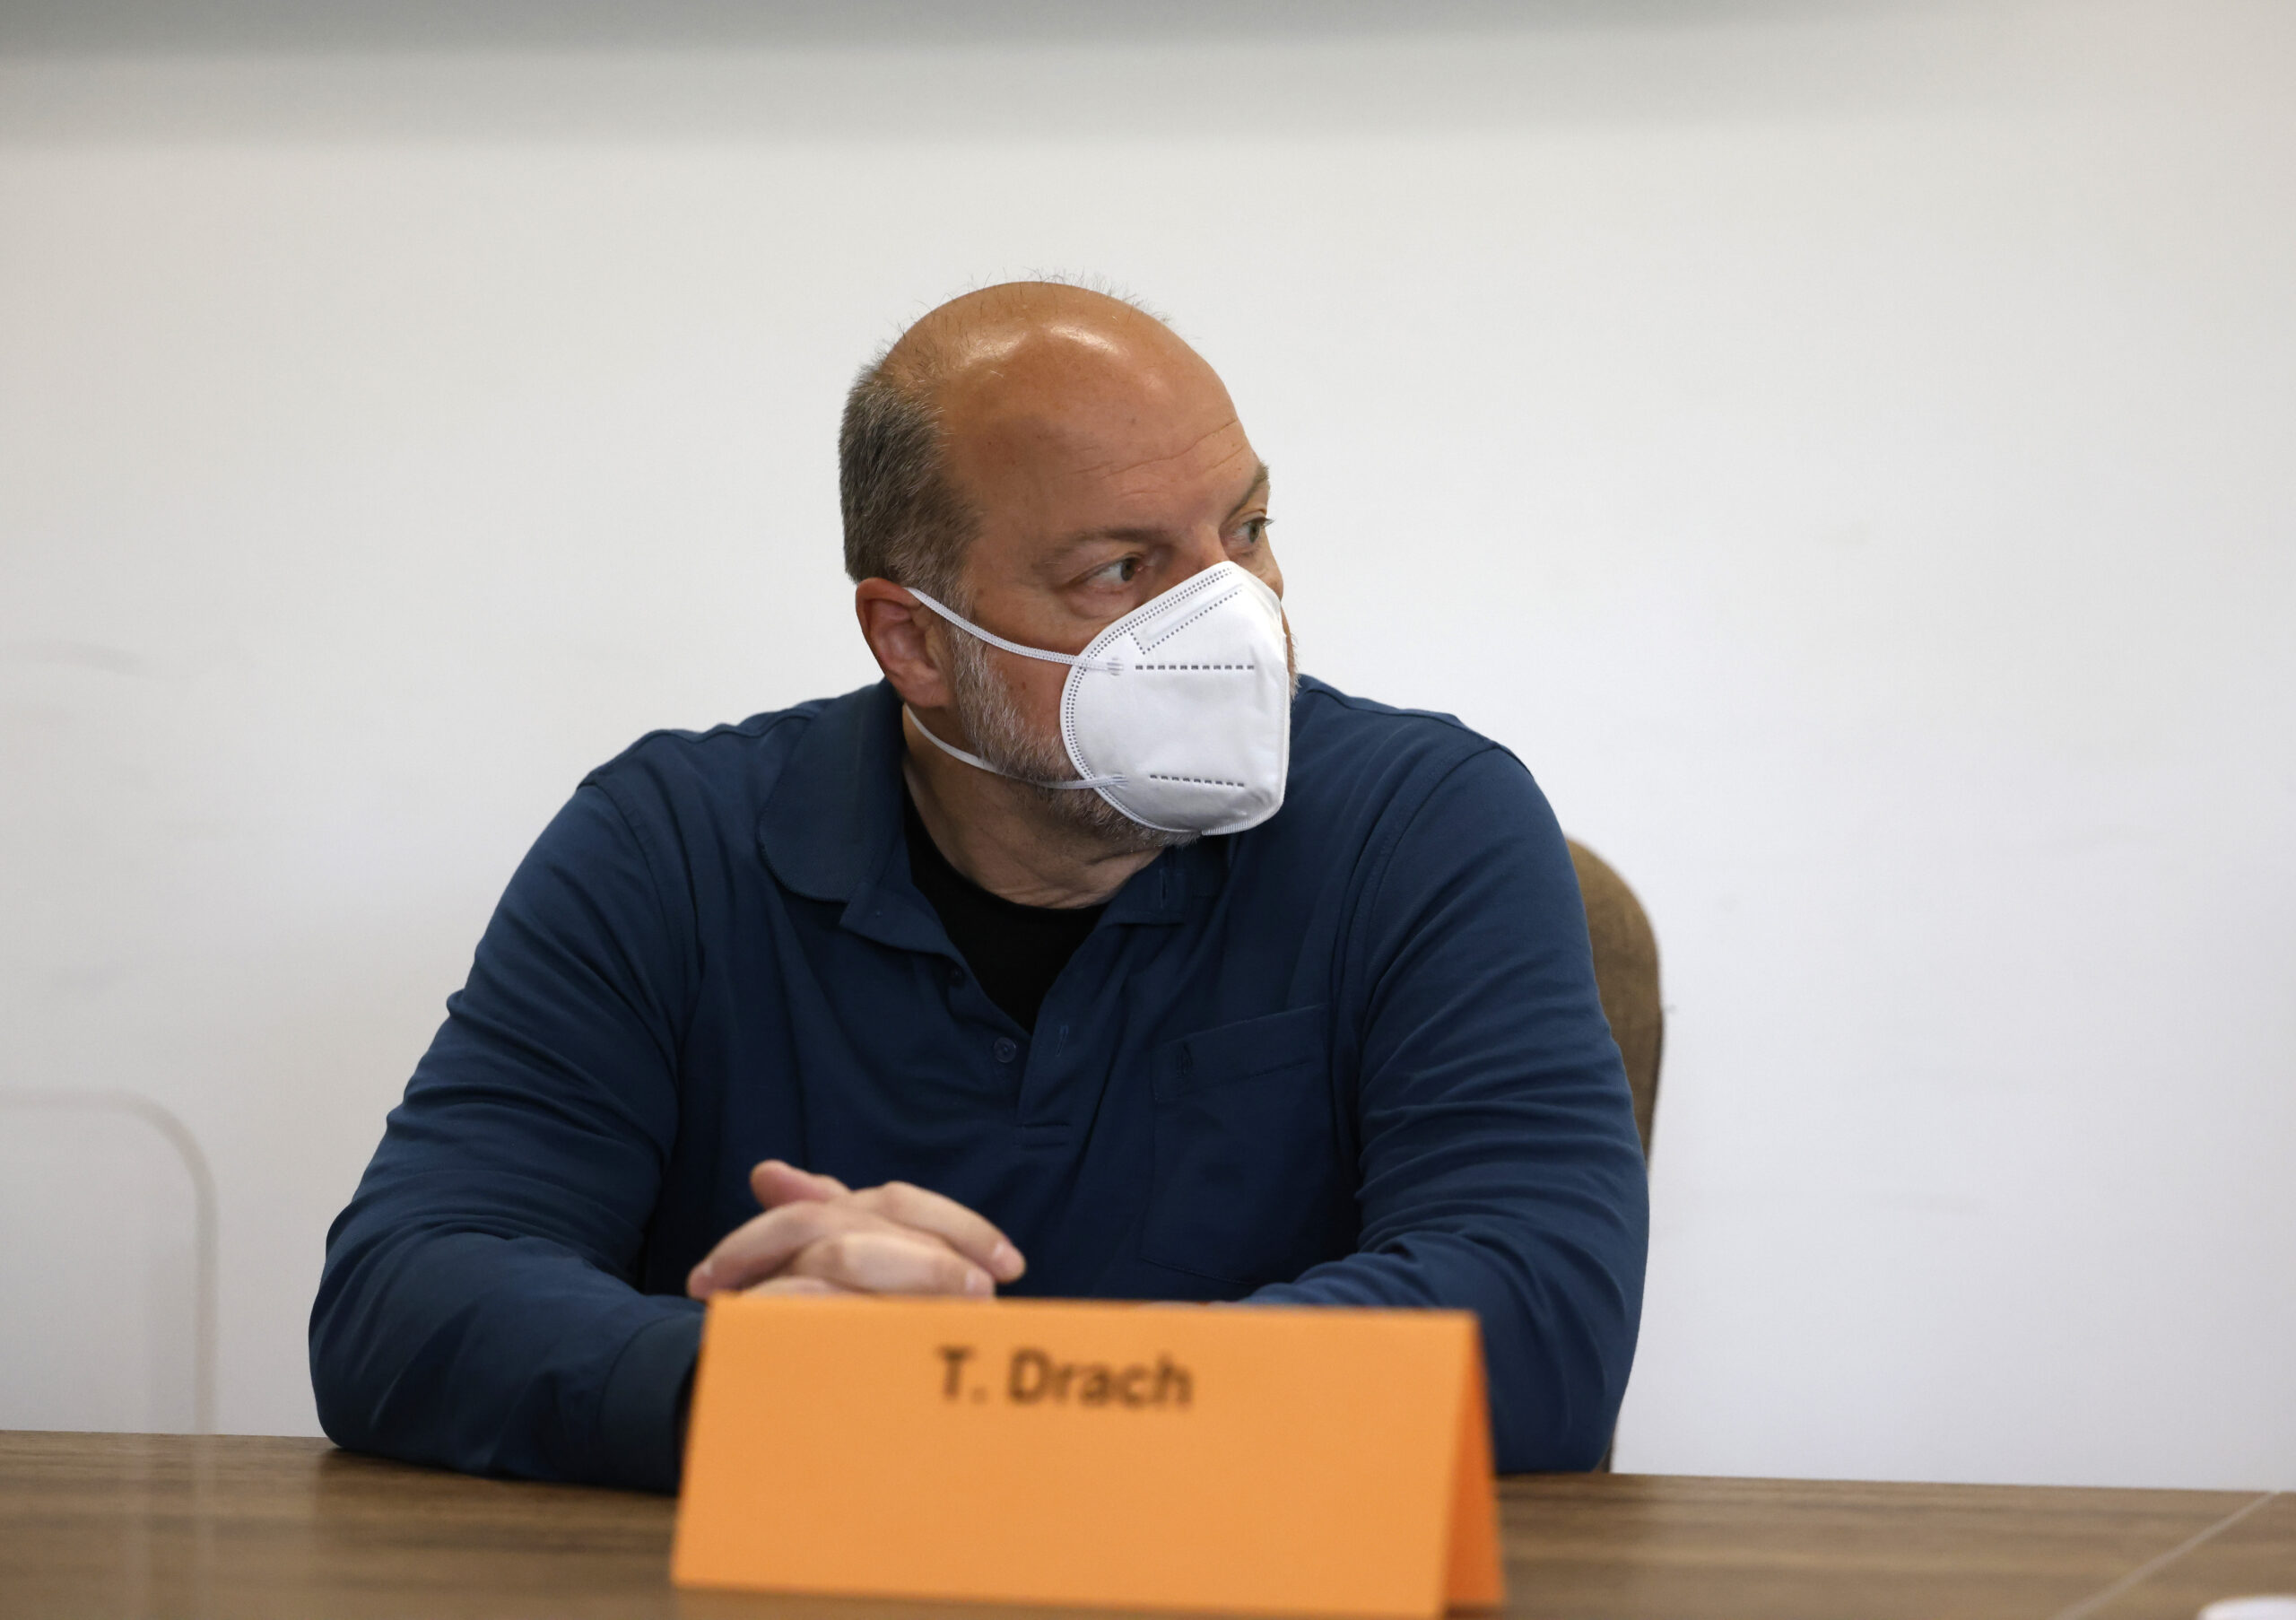 Der Angeklagte Thomas Drach sitzt auf der Anklagebank im Kölner Landgericht.